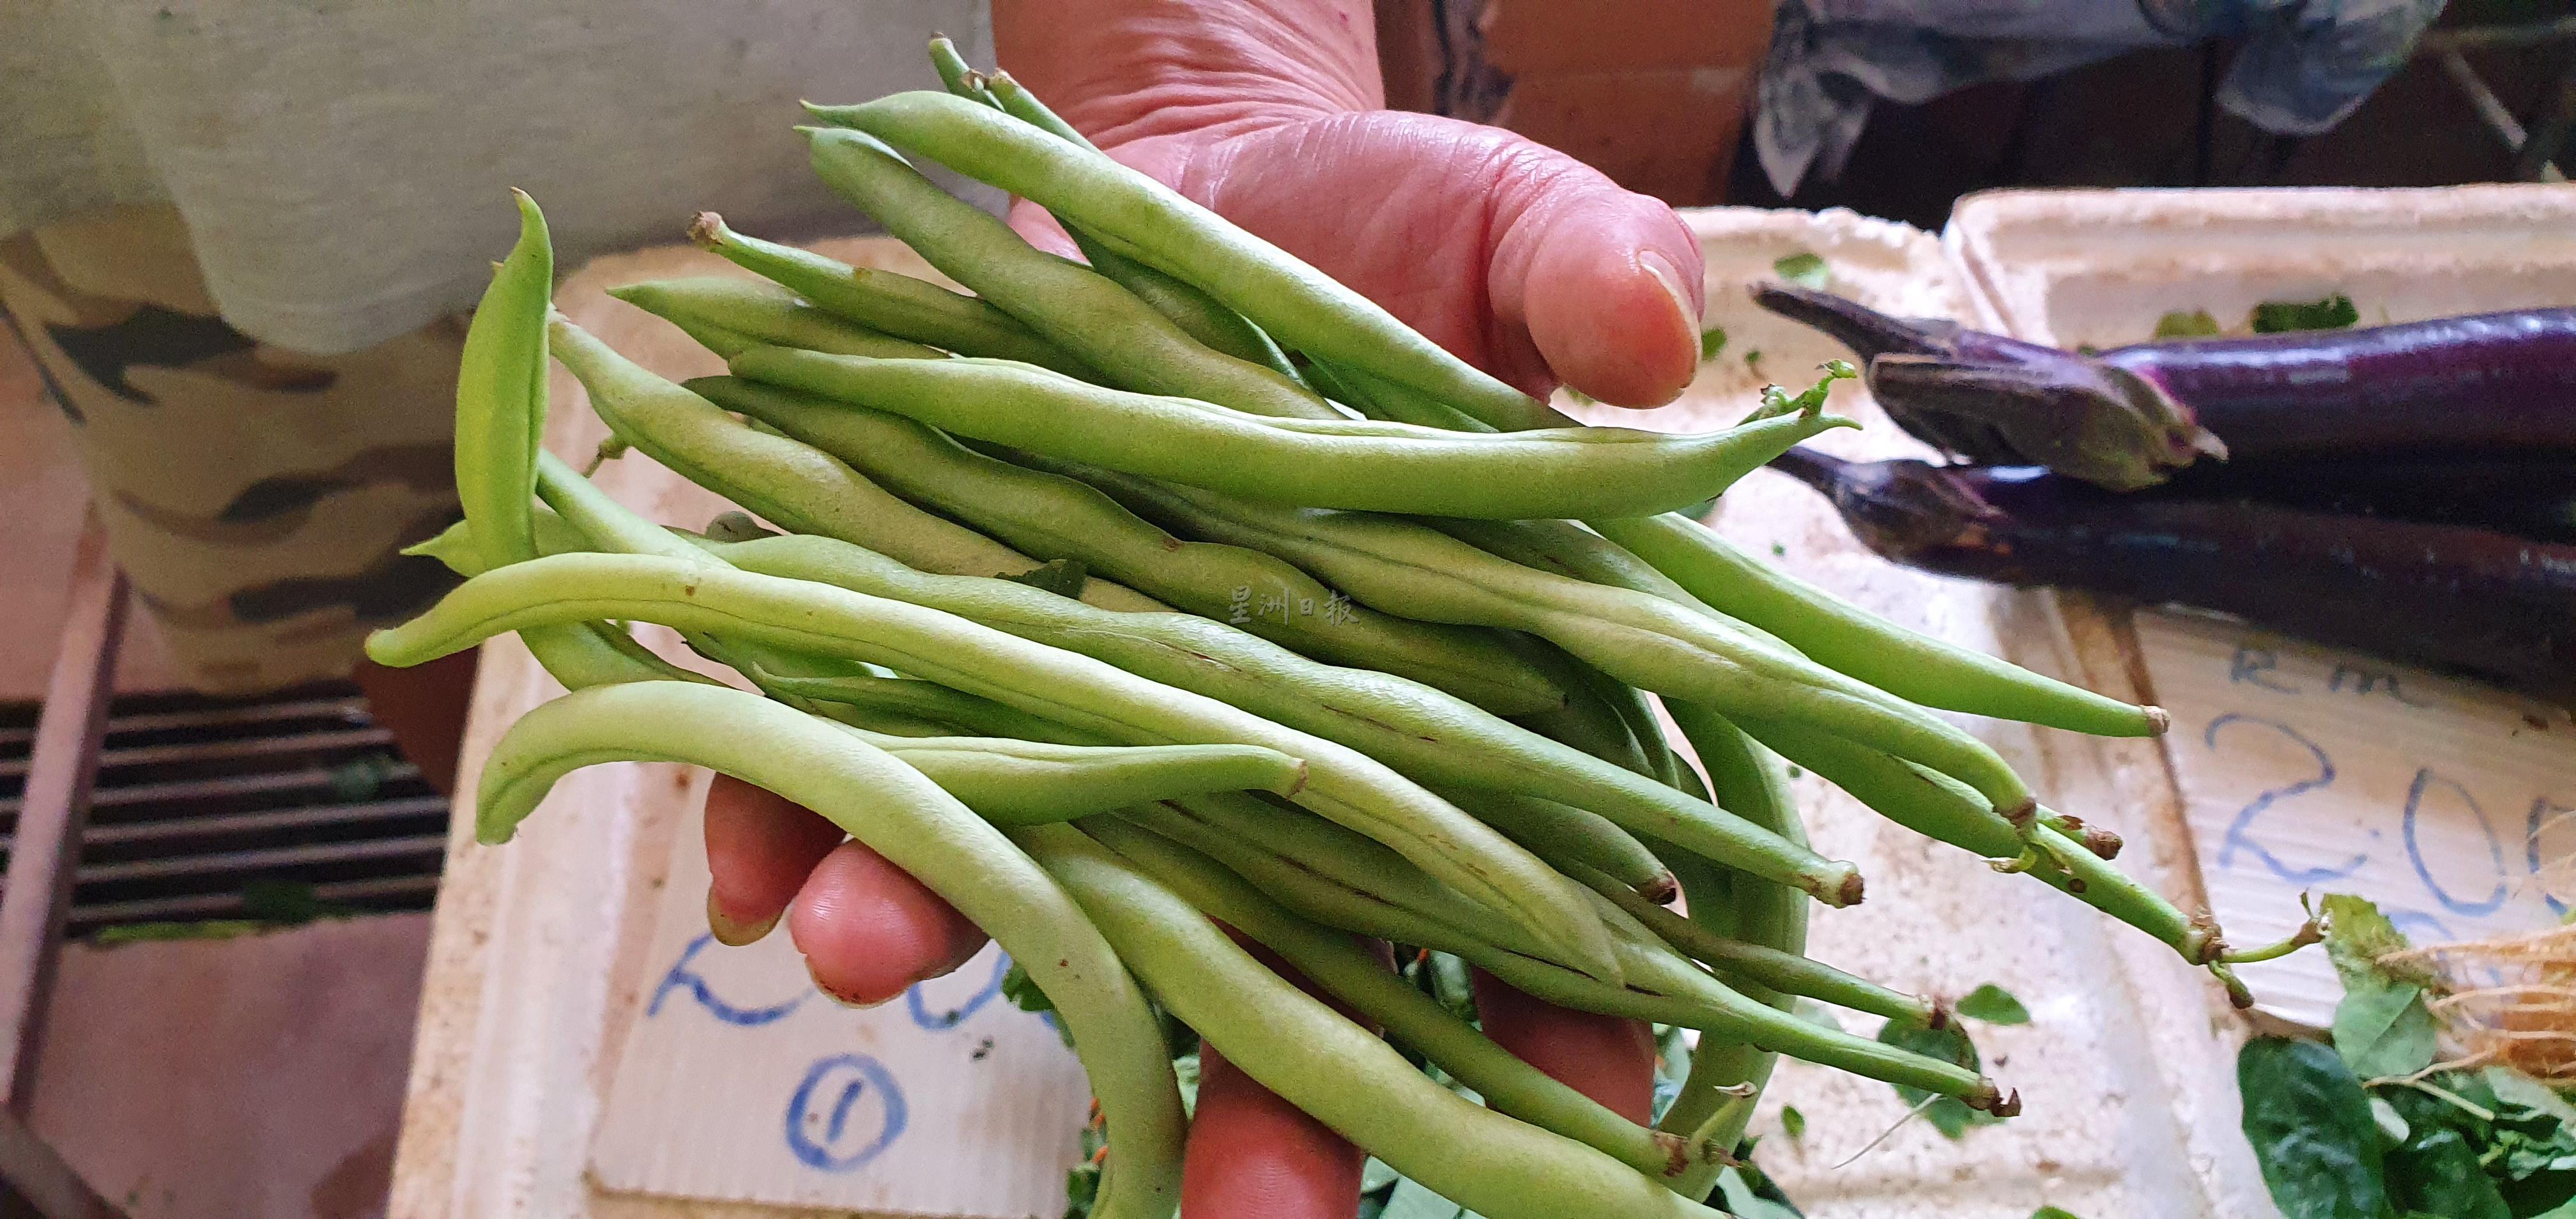 四季豆是近期涨幅最高的蔬菜，价格从原本每公斤10令吉上涨至18令吉。